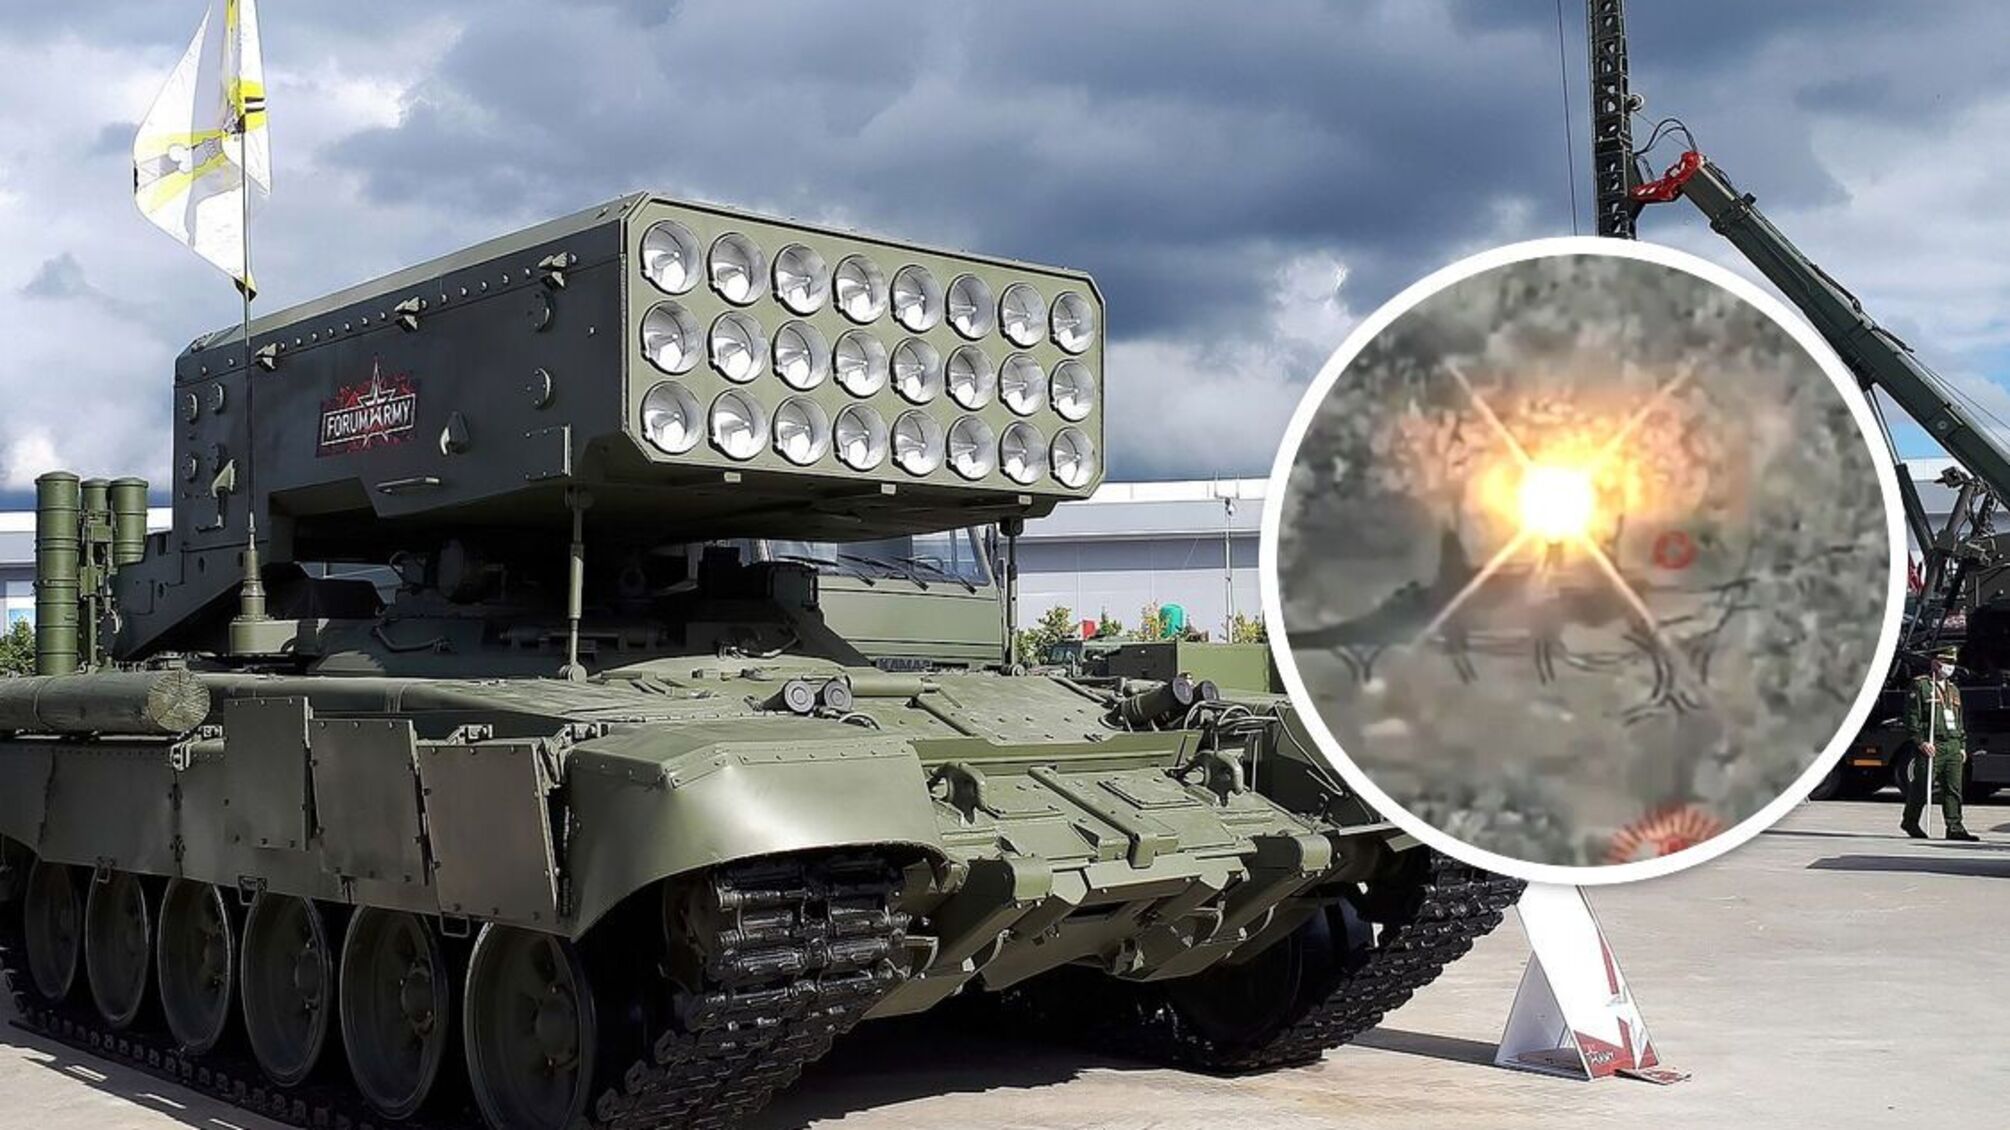 92 ОМБр ВСУ показала отработку по ТОС-1 'Солнцепек' армии рф (видео)